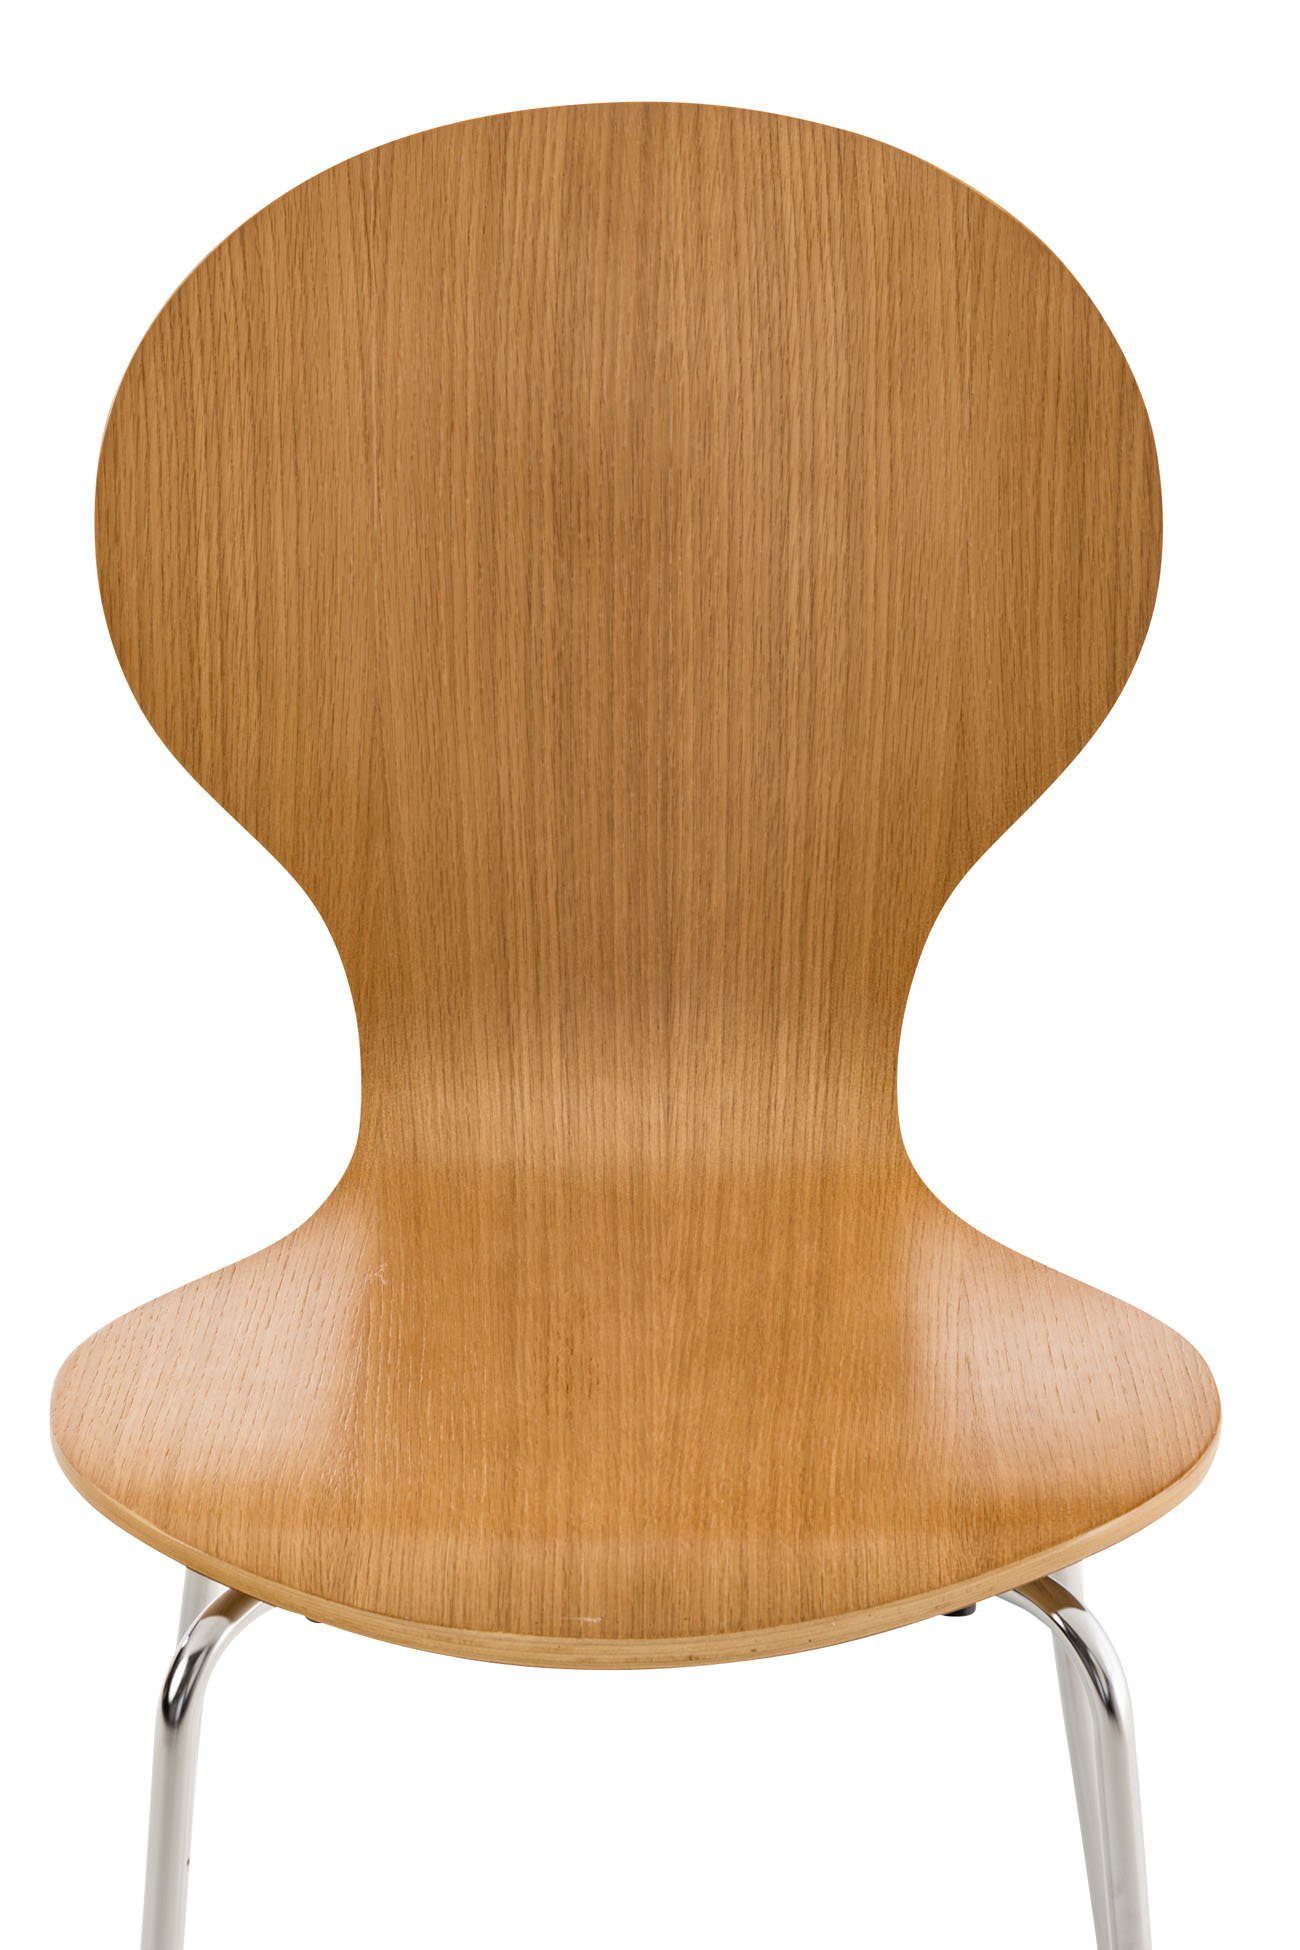 - Holz - Besucherstuhl Warteraumstuhl Metall Daggy Sitzfläche: - TPFLiving Sitzfläche eiche Gestell: Messestuhl), (Besprechungsstuhl ergonomisch mit - chrom geformter Konferenzstuhl